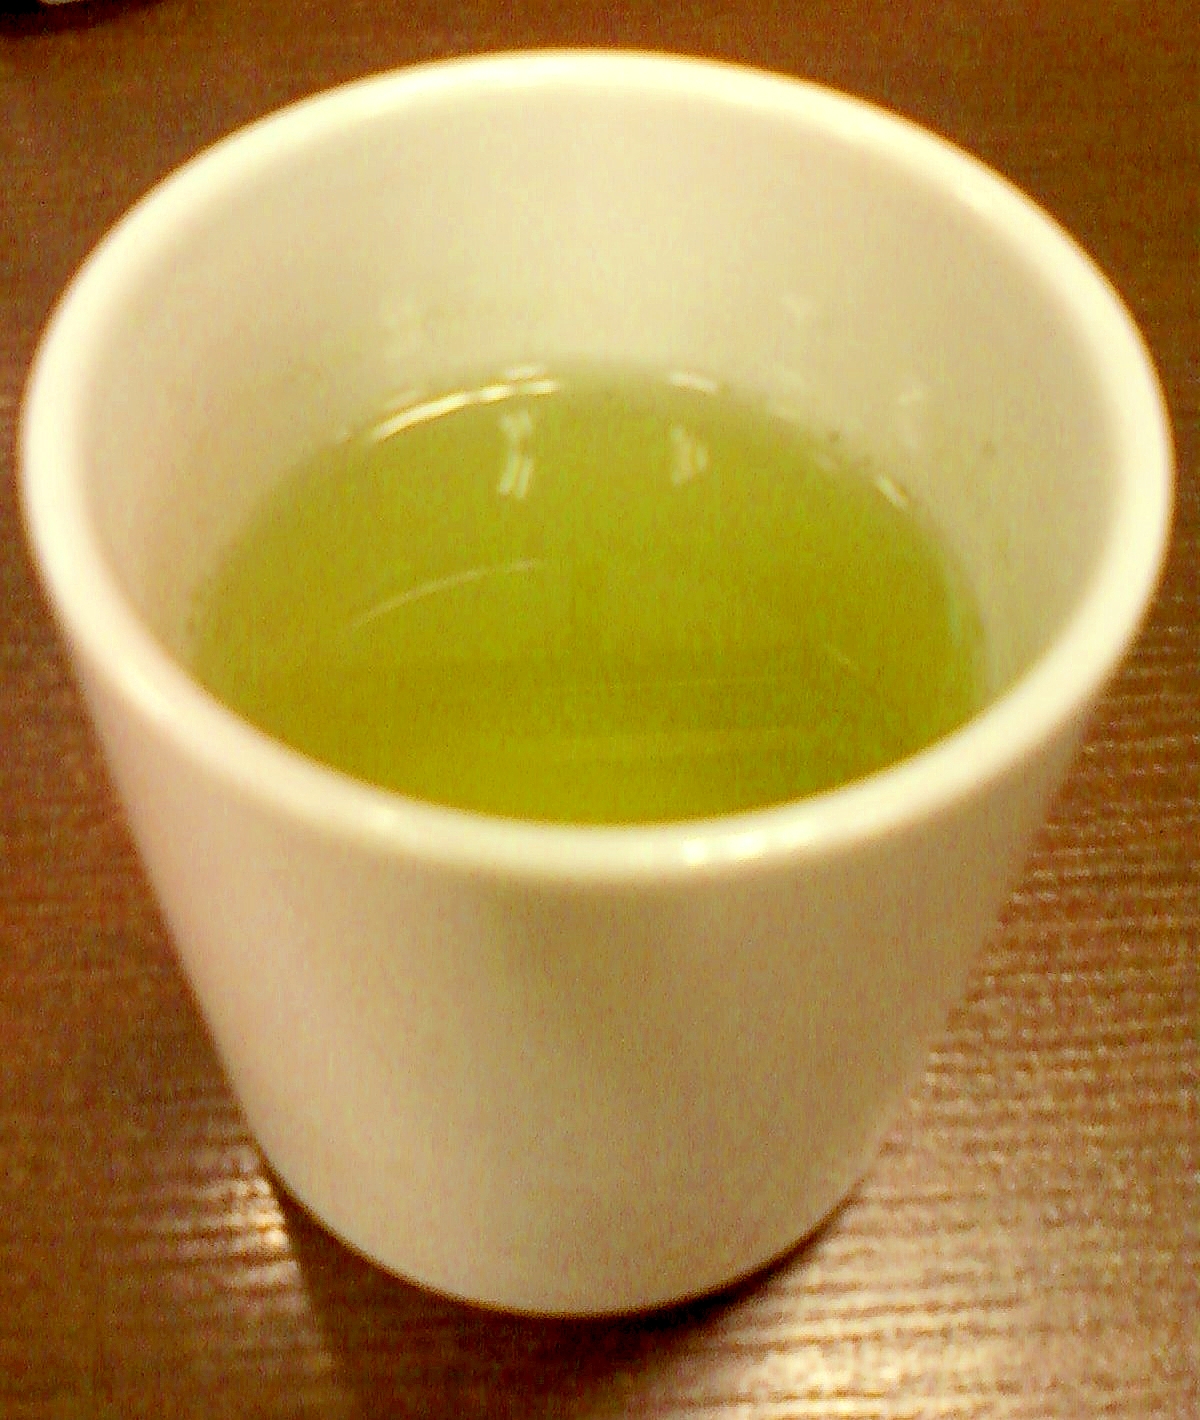 ☆*:・☆ミント水で作る抹茶緑茶☆*:・☆